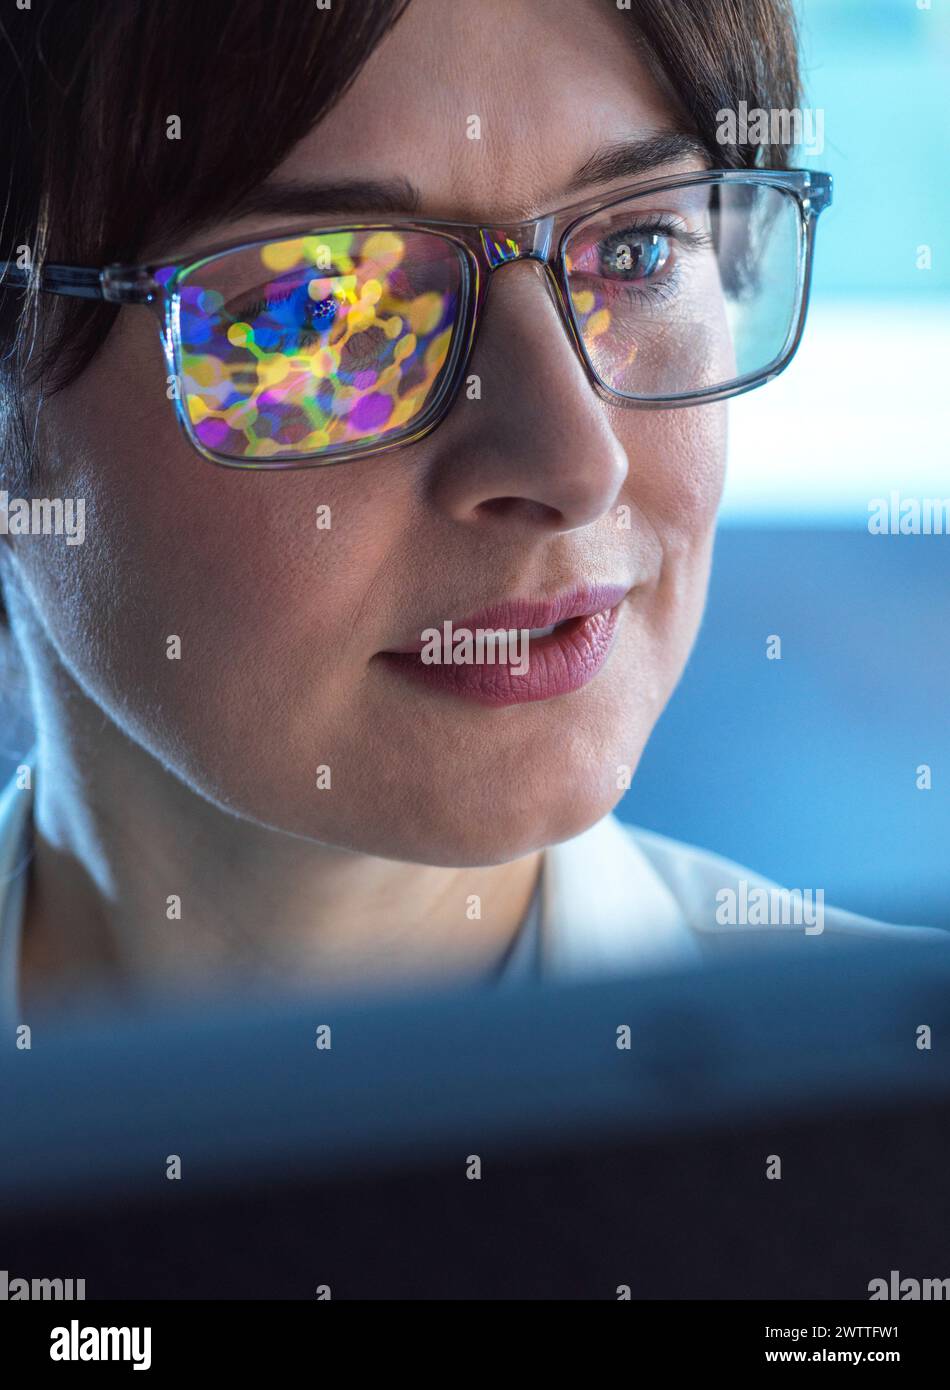 Weibliche STAMMWISSENSCHAFTLERIN mit künstlicher Intelligenz, um ein molekulares Modell einer chemischen Verbindung auf einem Computerbildschirm zu entwerfen. Stockfoto